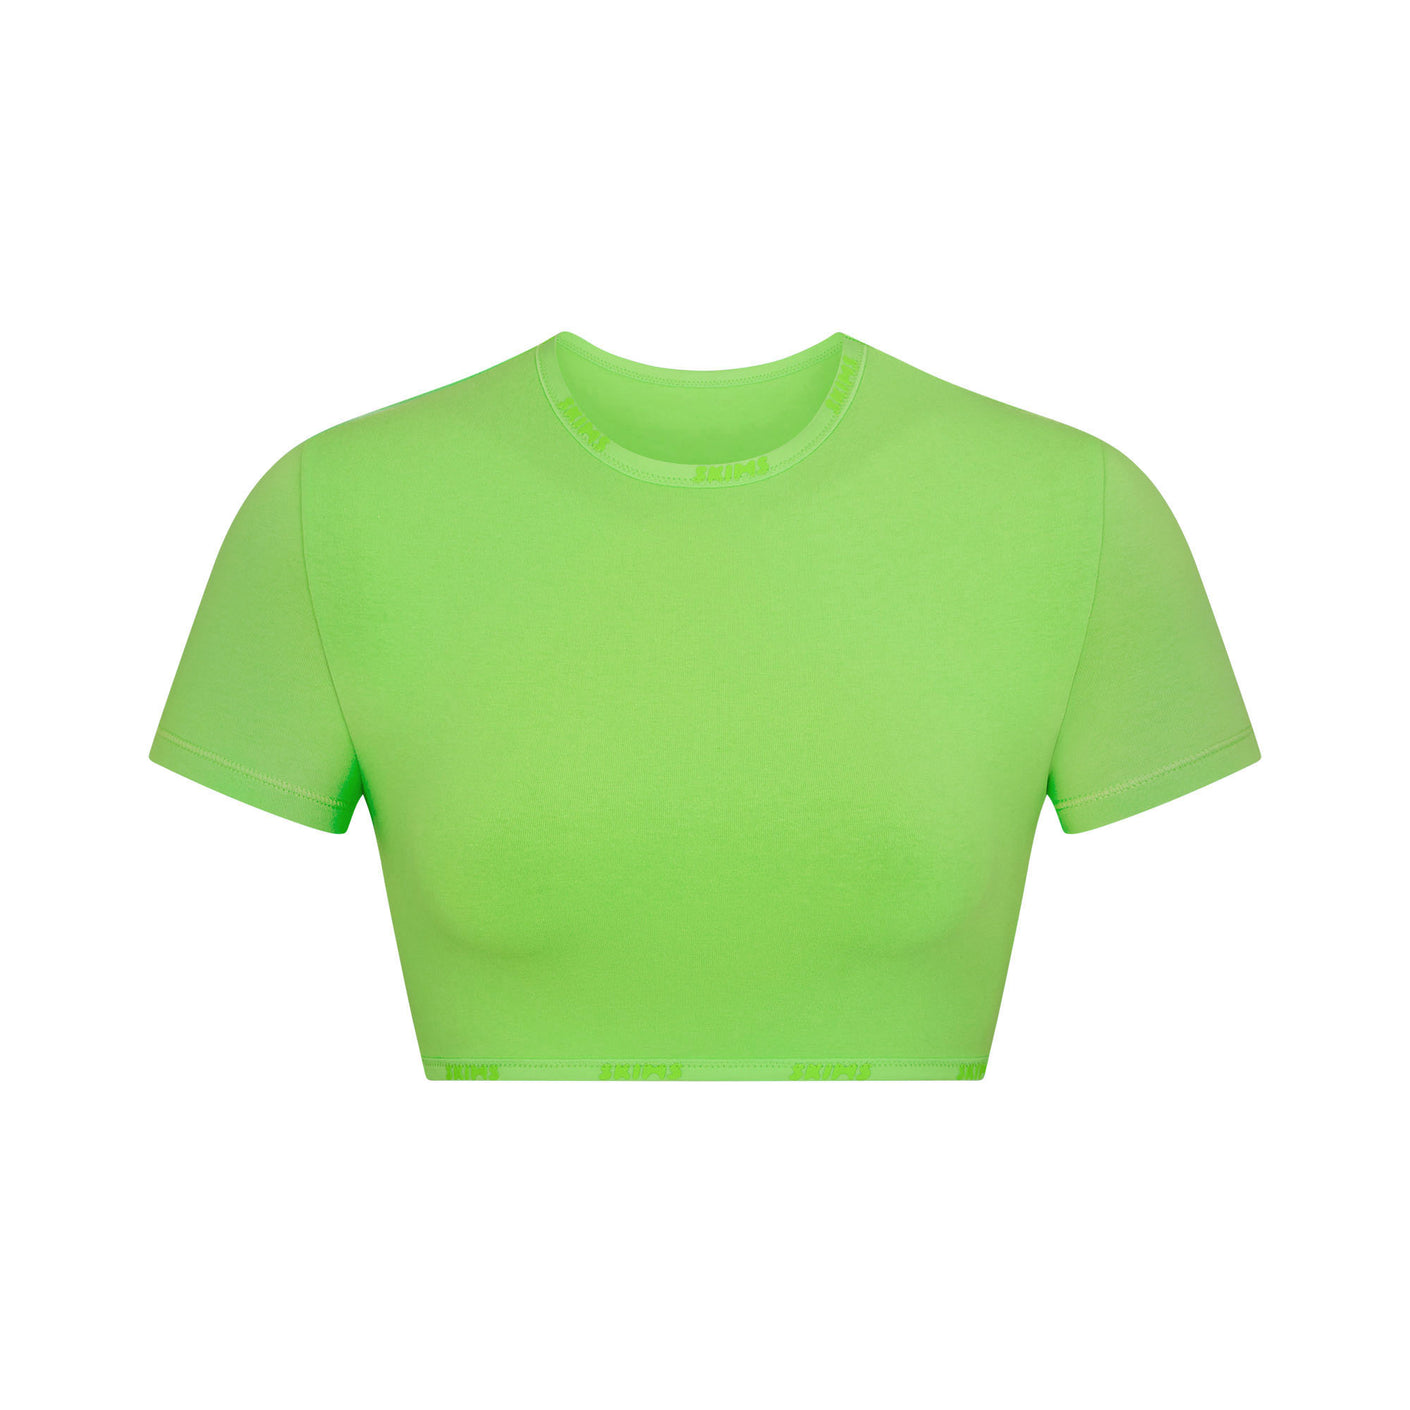 Skims T-shirt in Green for Men